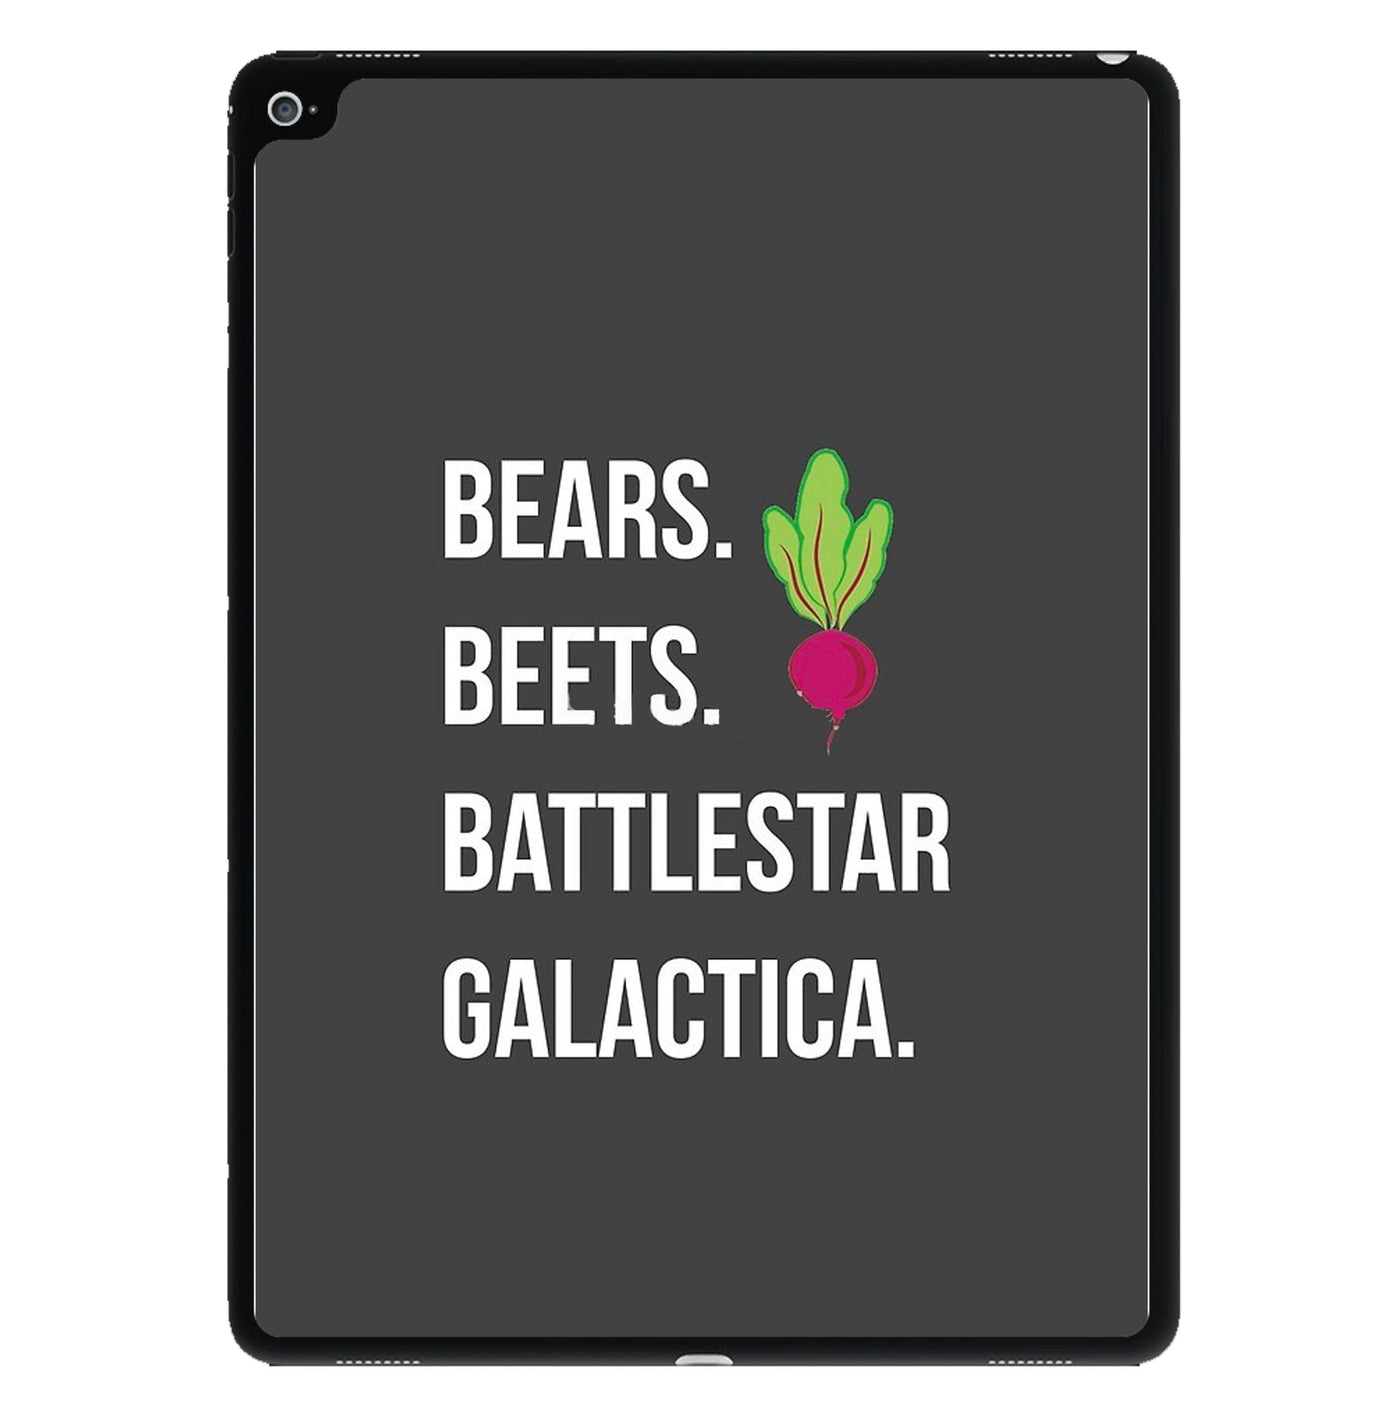 Bears. Beets. Battlestar Galactica Illustration - The Office iPad Case